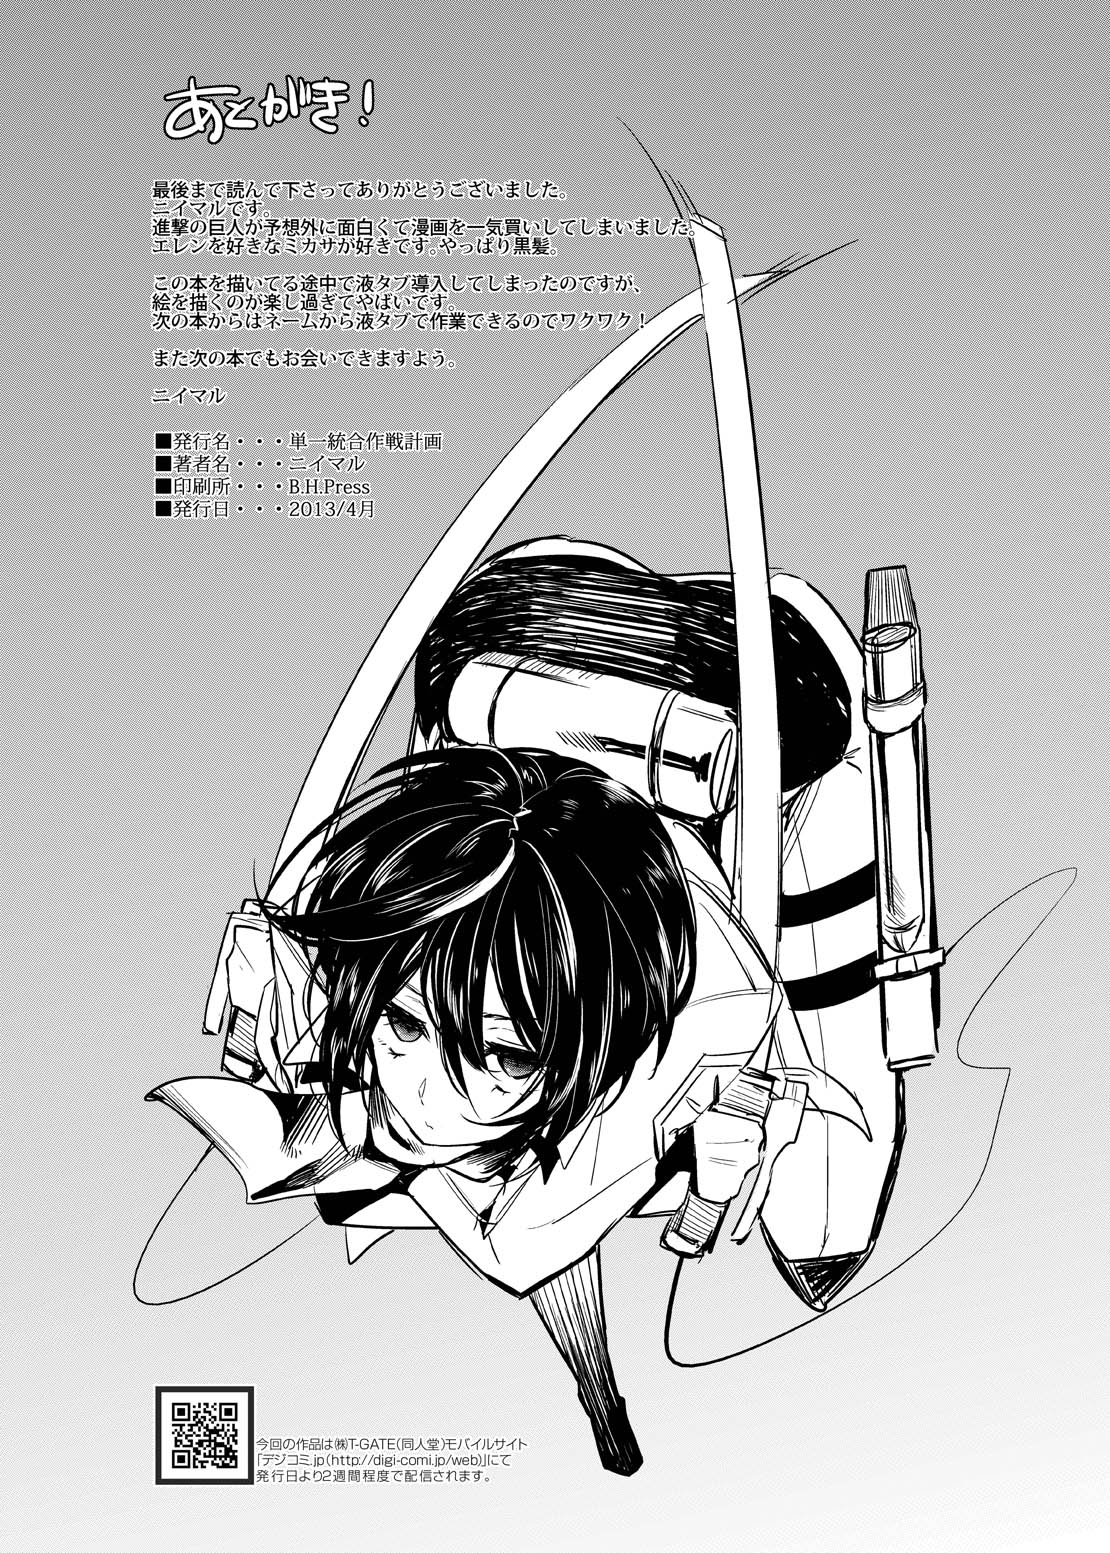 (COMIC1☆7) [SIOP (Nimaru)] Mikasa Choukyou Houkokusho (Shingeki no Kyojin) (COMIC1☆7) [単一統合作戦計画 (ニイマル)] ミカサ調教報告書 (進撃の巨人)